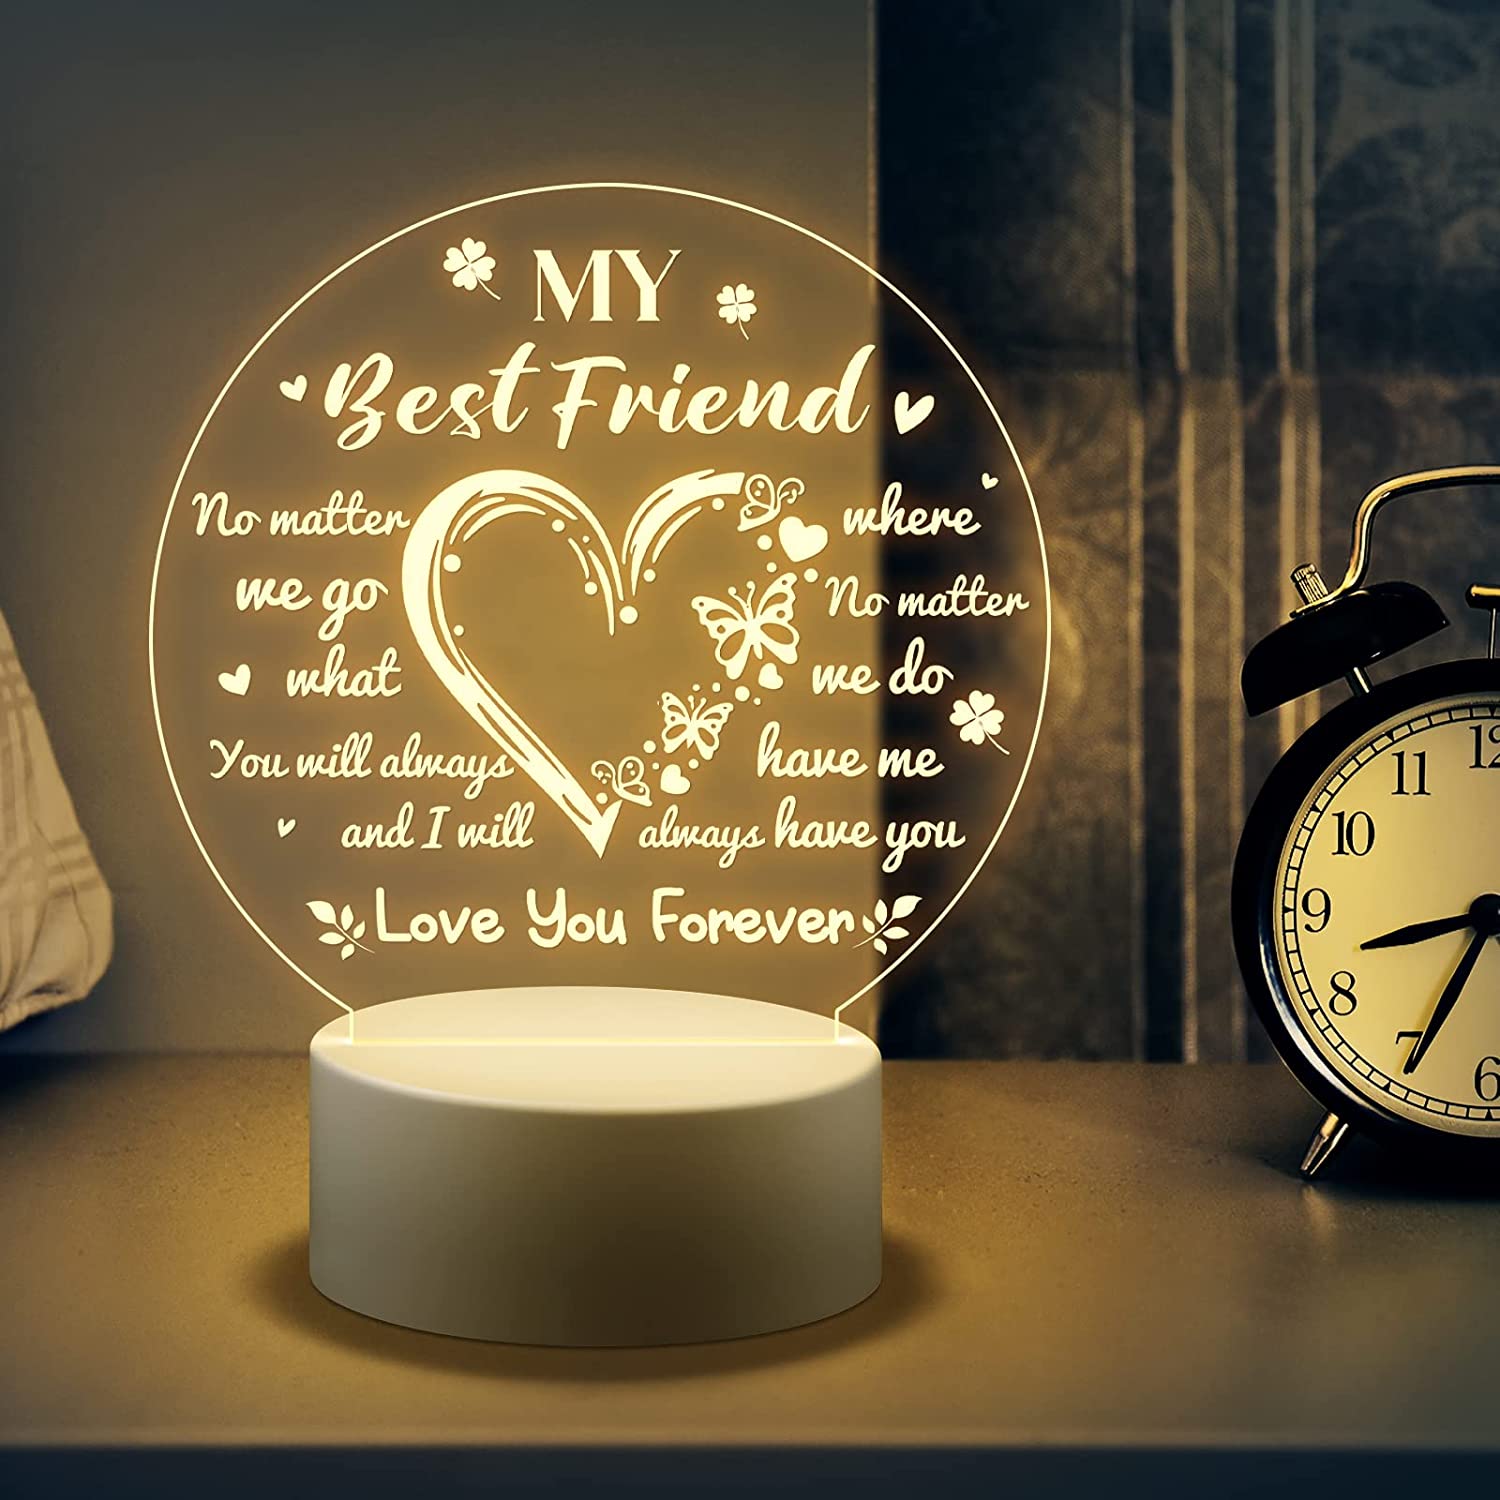 Lampe für eine Freundin, Tischlampe mit Stecker, Ein und Ausschlater,  Geschenk für Freundin, Freundschaft auf Entfernung, Freunde wie Sterne -  .de